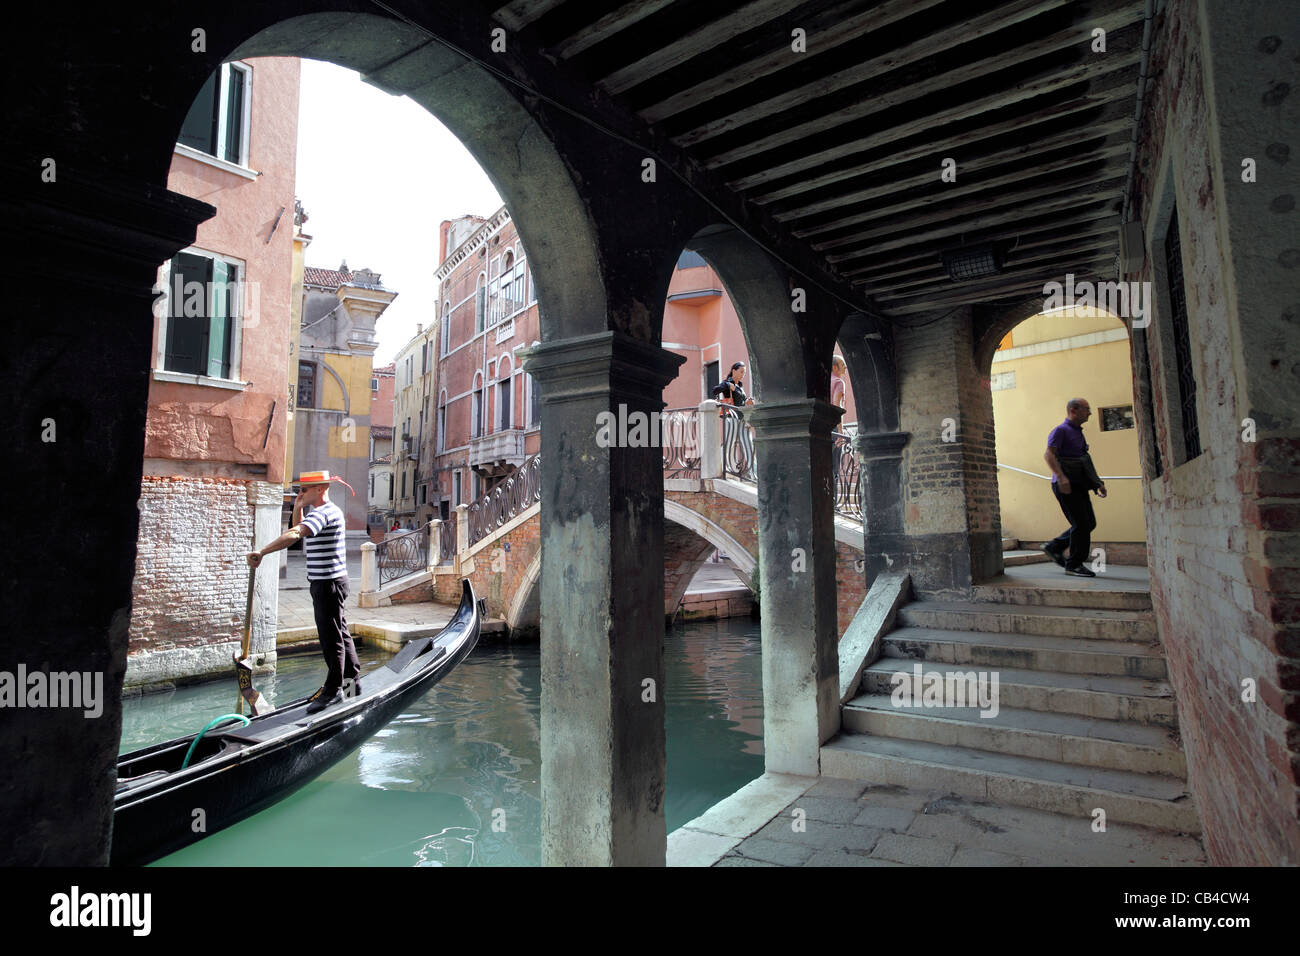 La ponte s Canzian, près du Campo S Canciano, une petite rue typique et canal à Venise. Banque D'Images